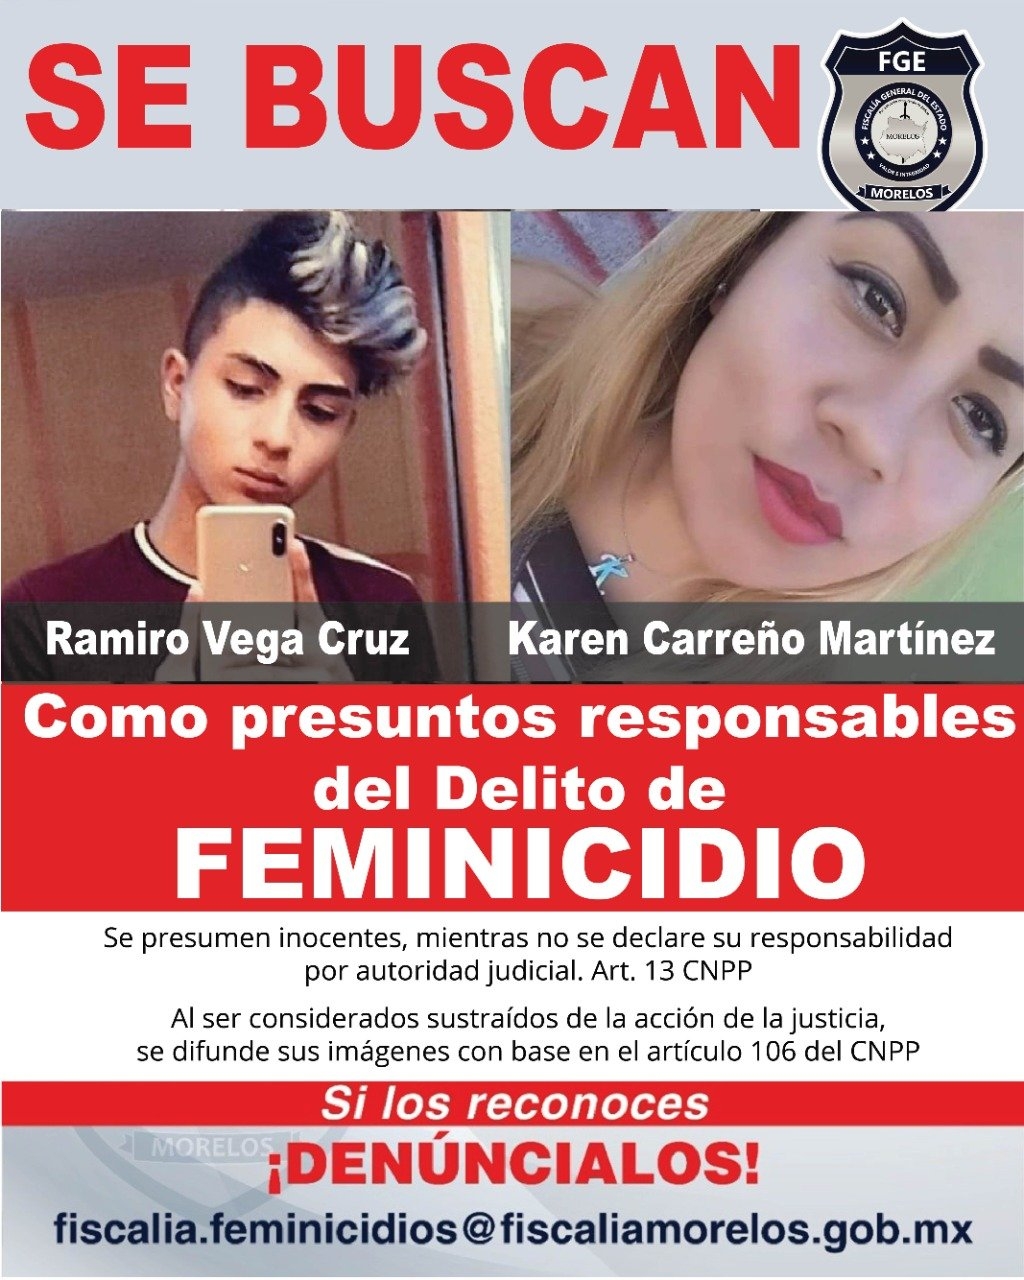 Fiscalía de Morelos obtiene otras dos órdenes de aprehensión por el feminicidio de Margarita Ceceña